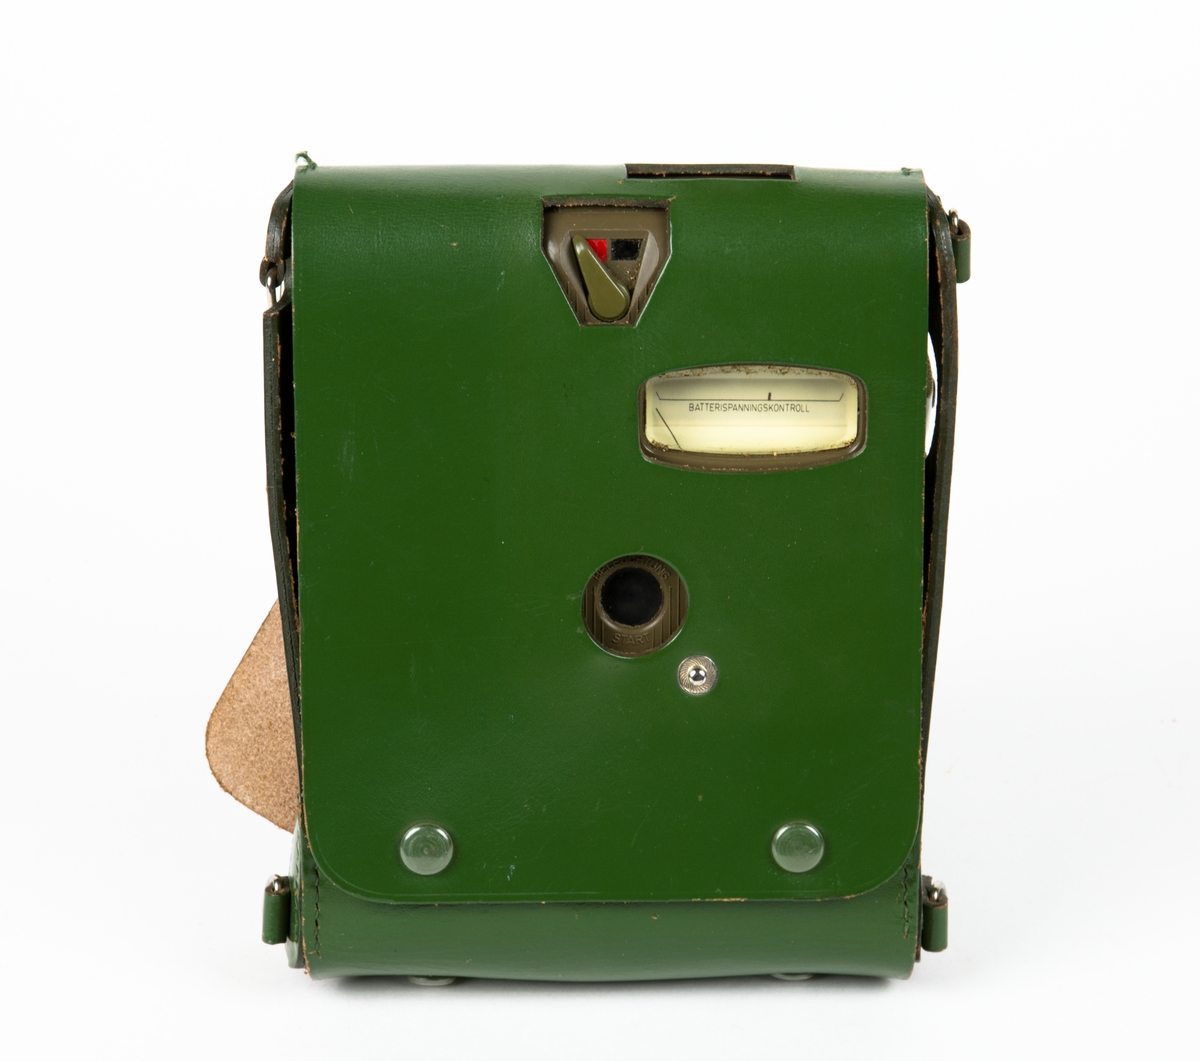 Intensimetern ligger i en läderväska. I läderväskan finns även en batteribox samt en probe (kännare för mätning av spänning). Till intesimeten följer även en bruksanvisning för Graets intensimeter X-50.